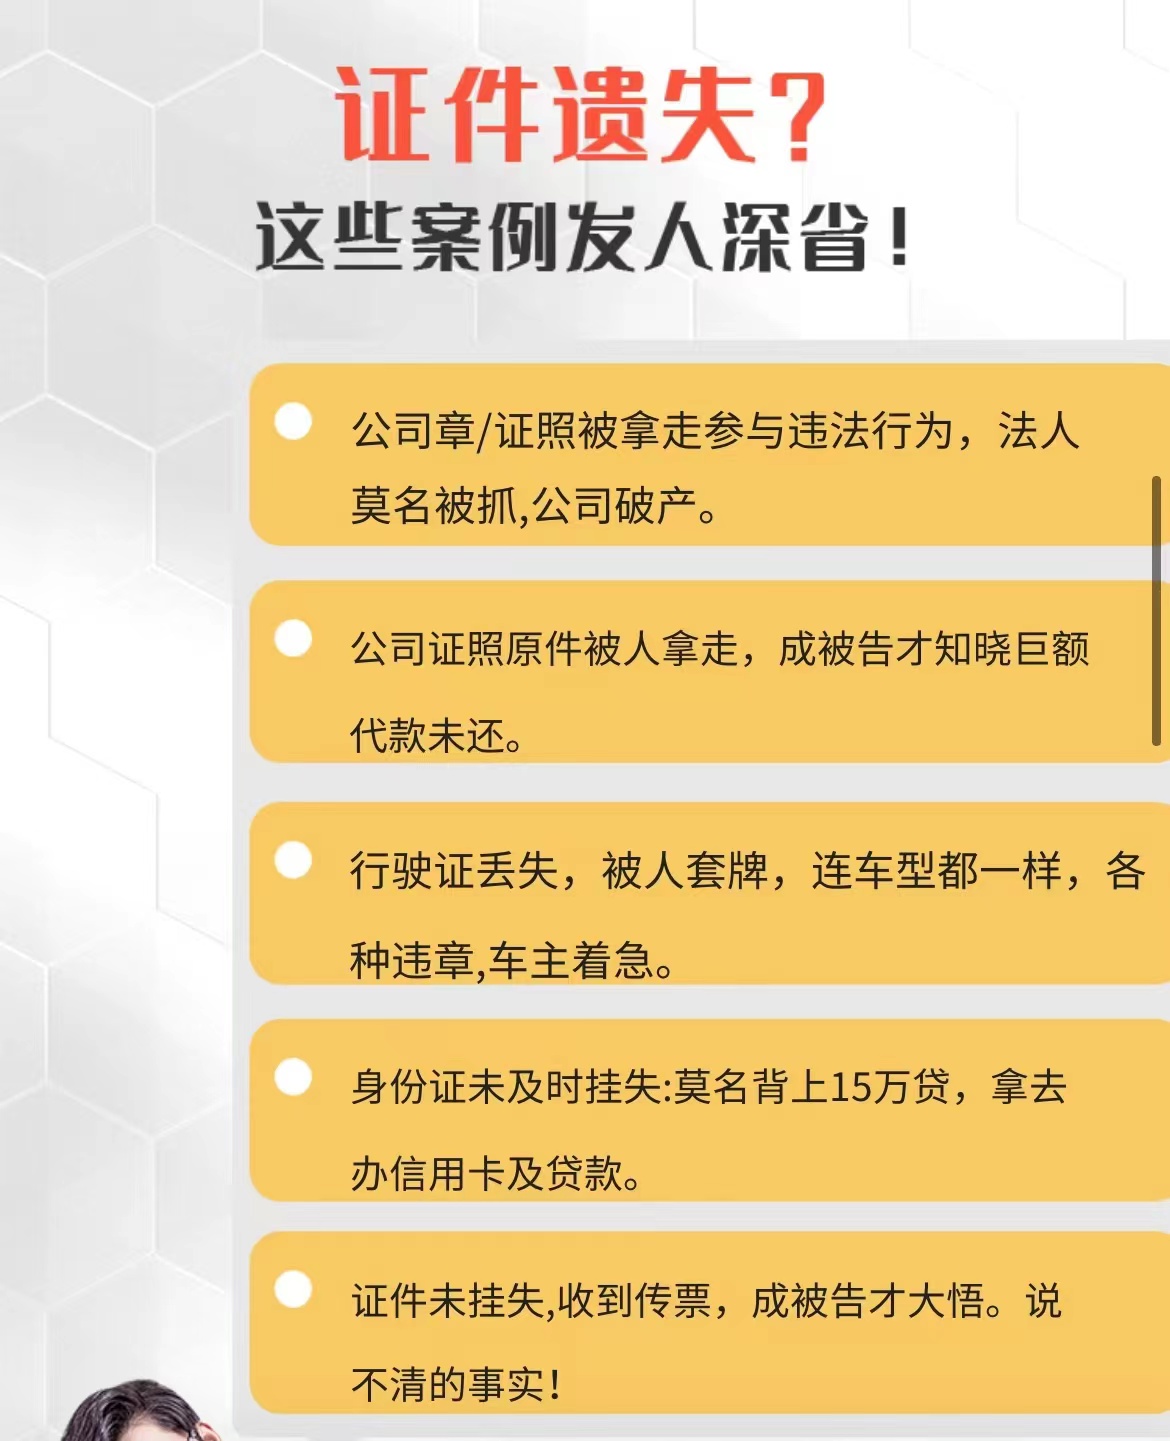 声明公告九寨沟县日报登报咨询热线电话